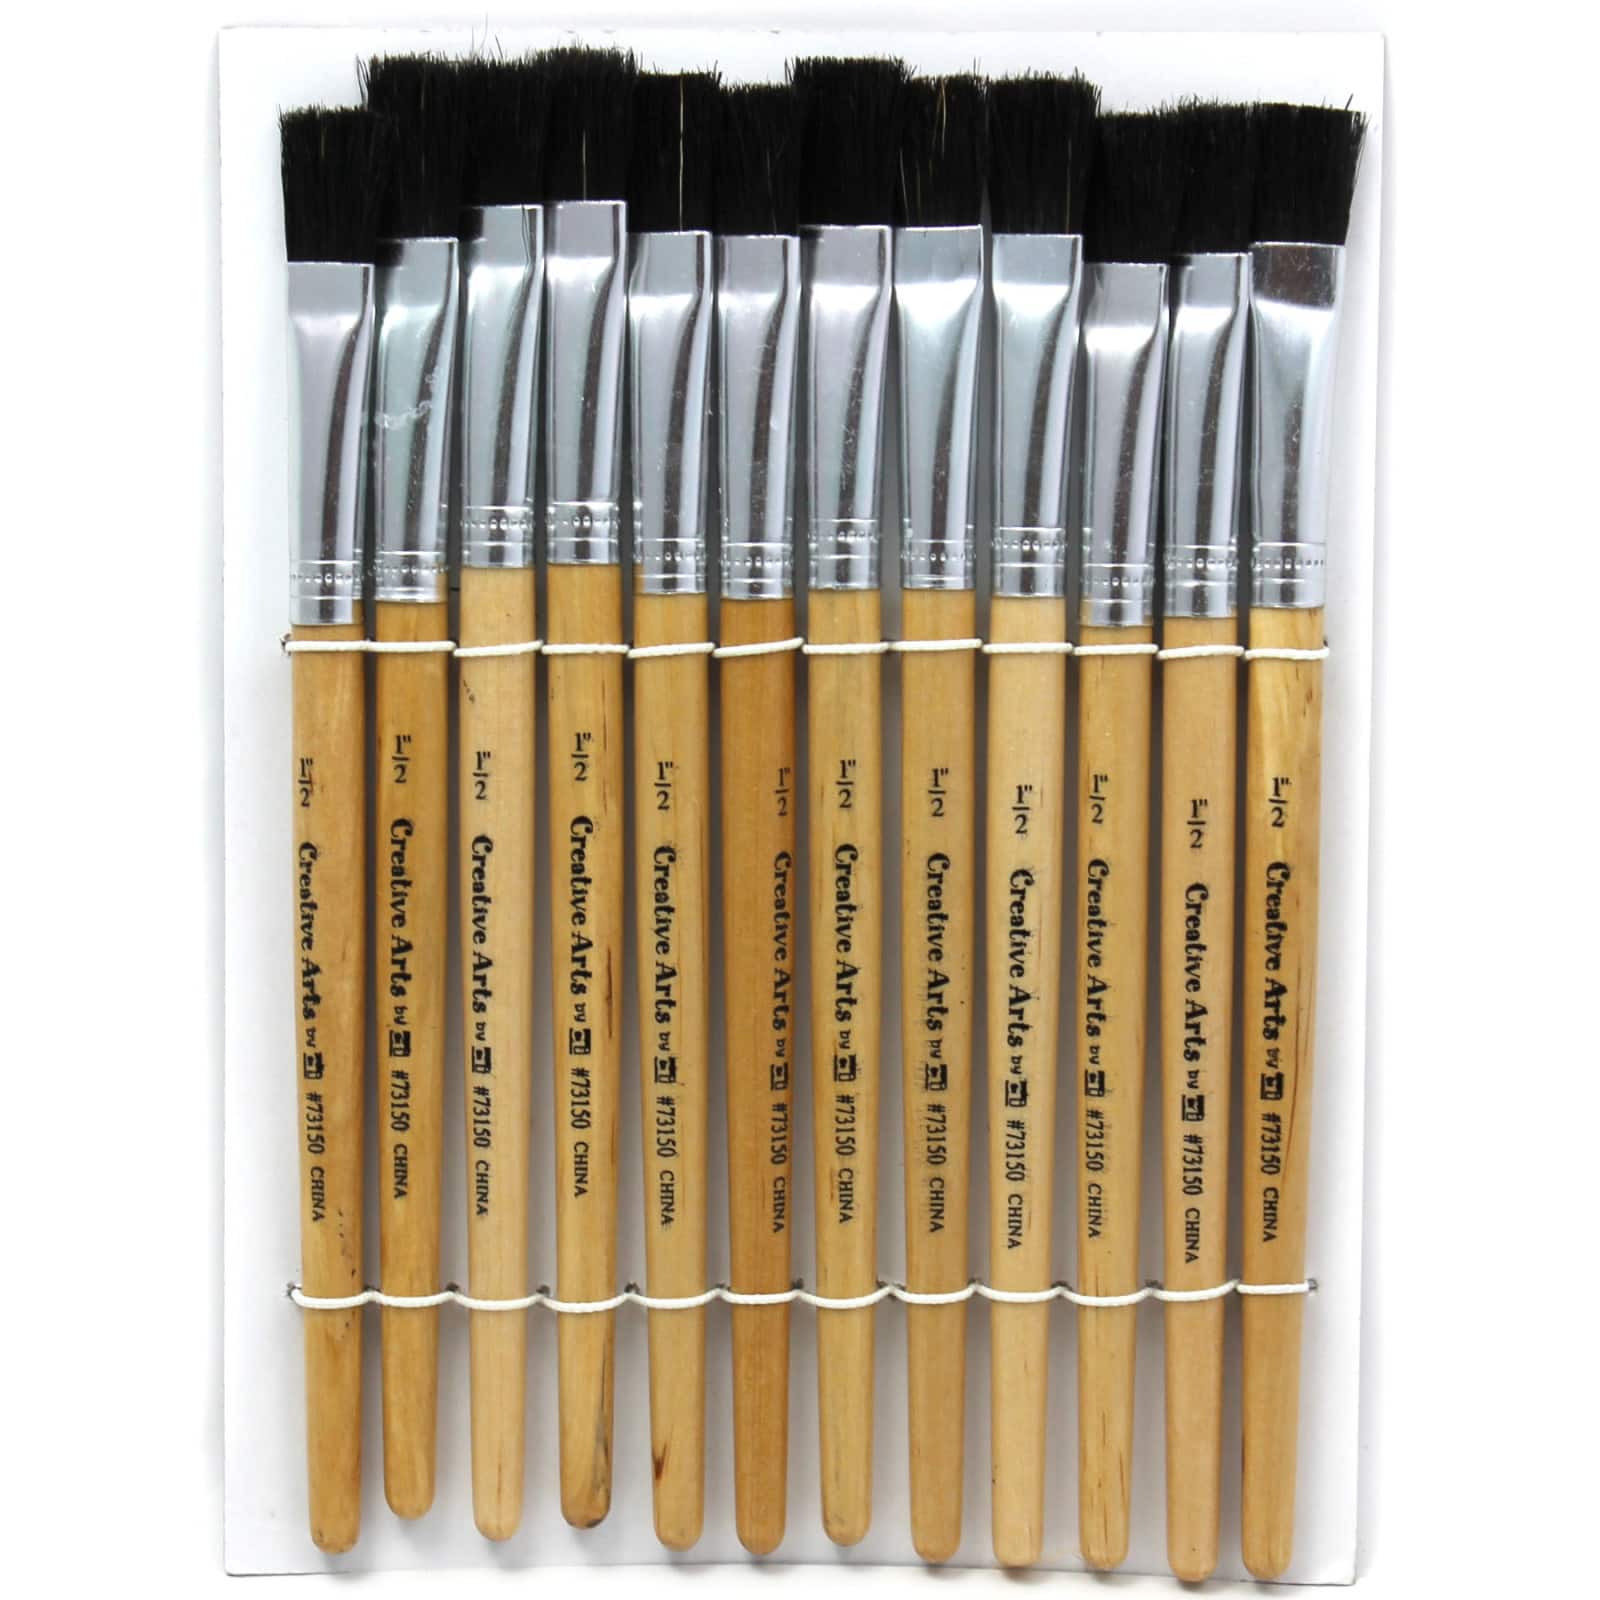 Charles Leonard Flat Tip Easel Paint Brushes, 3 Packs of 12